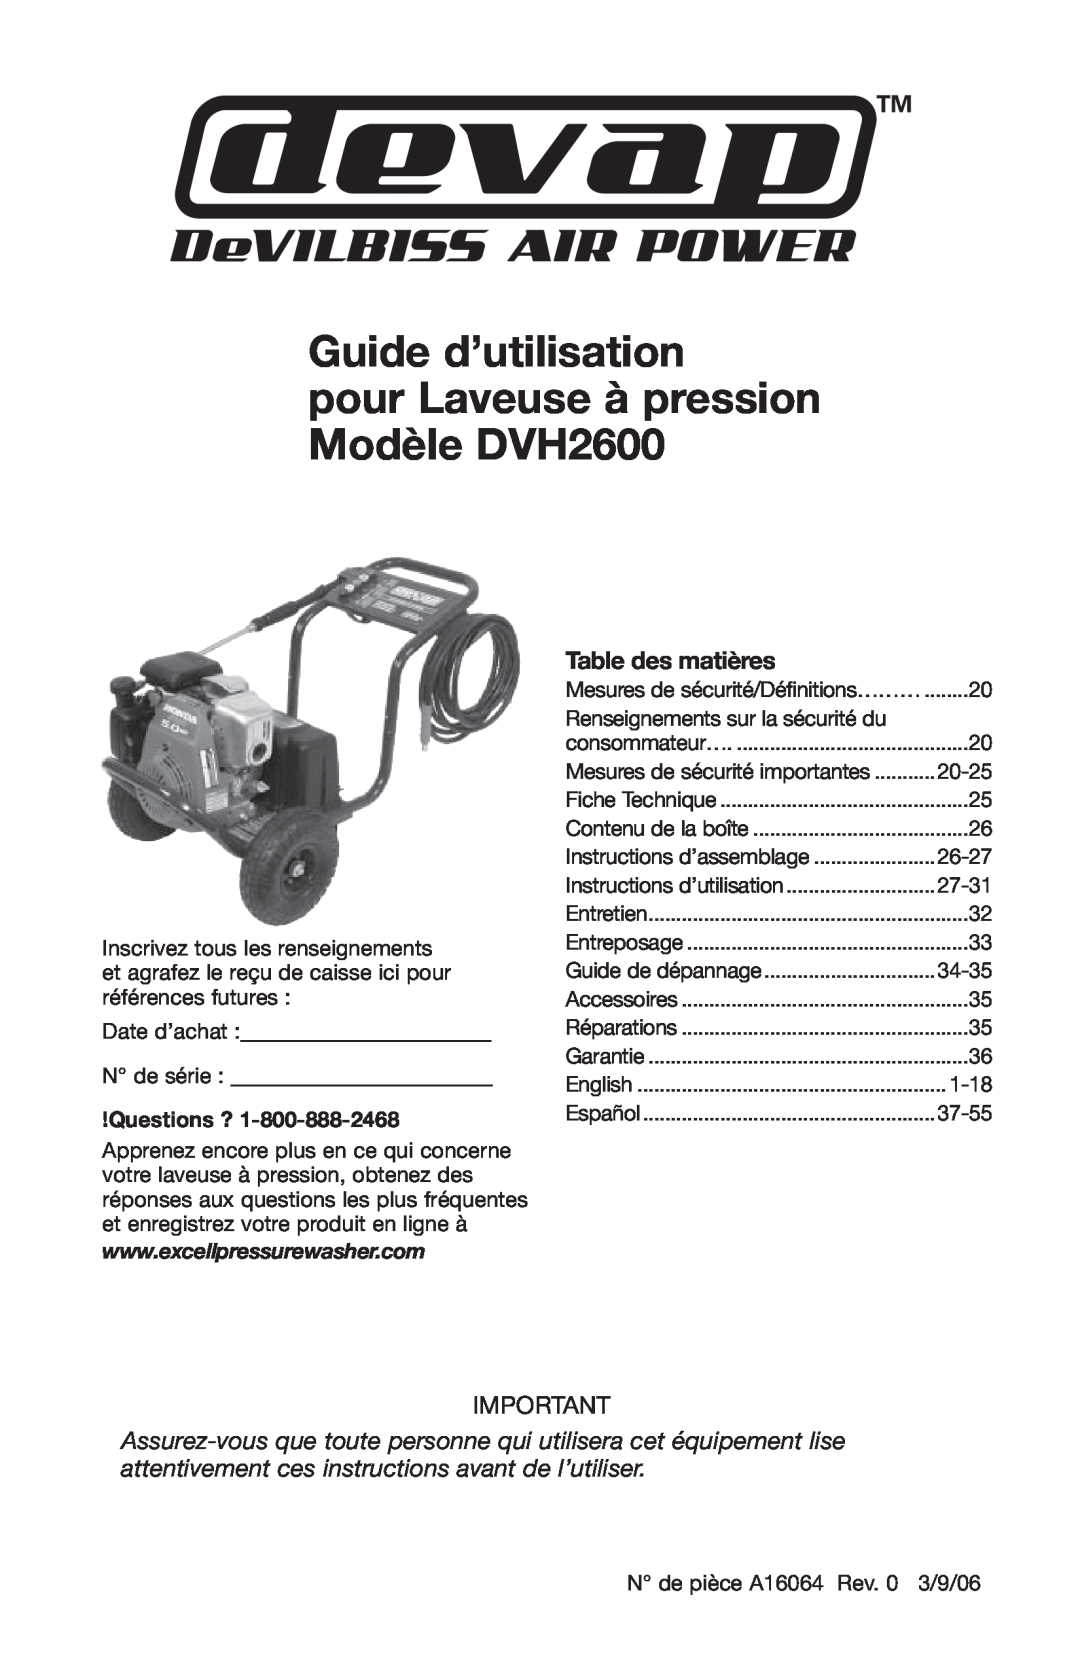 DeVillbiss Air Power Company A16064 Guide d’utilisation pour Laveuse à pression Modèle DVH2600, Table des matières 